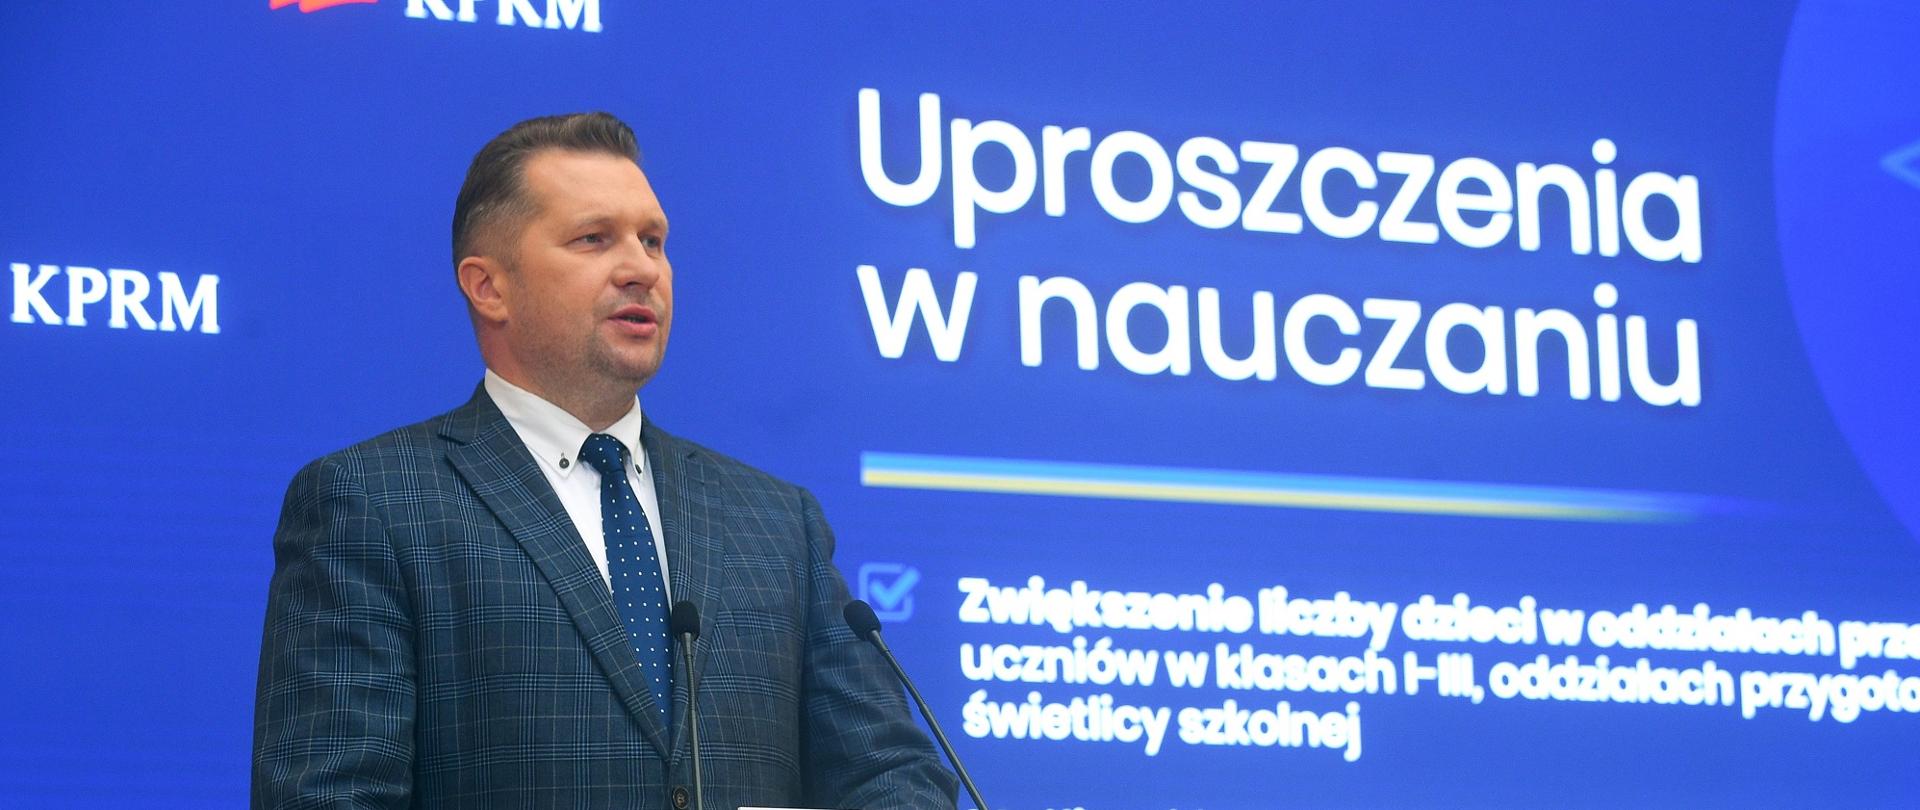 Minister Czarnek przemawia do mikrofonu na tle niebieskiej ściany z napisem Uproszczenia w nauczaniu.